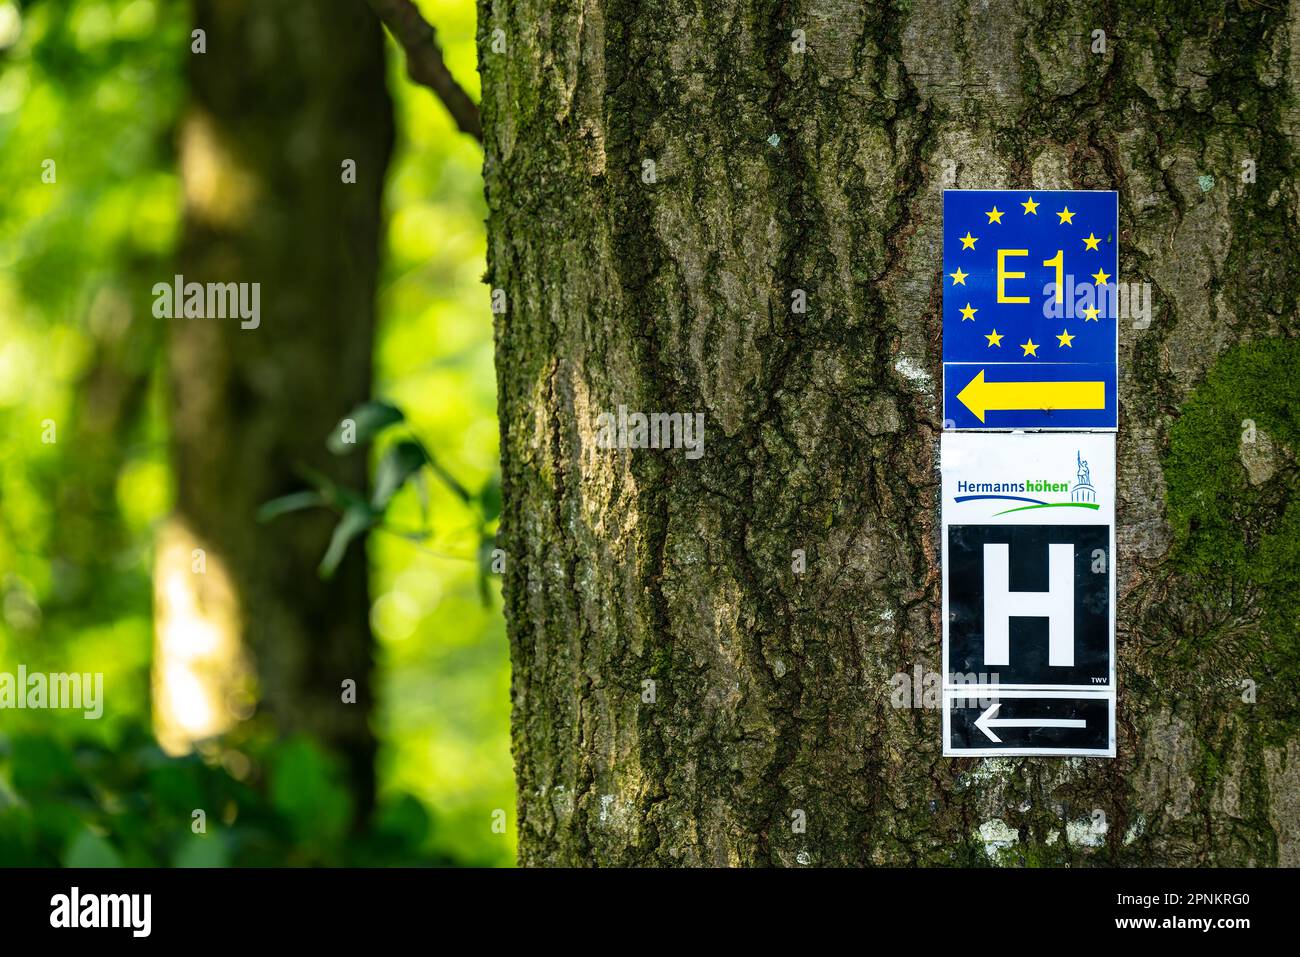 Indicazioni stradali per il percorso europeo a lunga distanza E1 e il percorso escursionistico a lunga distanza Hermannsweg/Hermannshöhen su un albero, la Foresta di Teutoburg Foto Stock